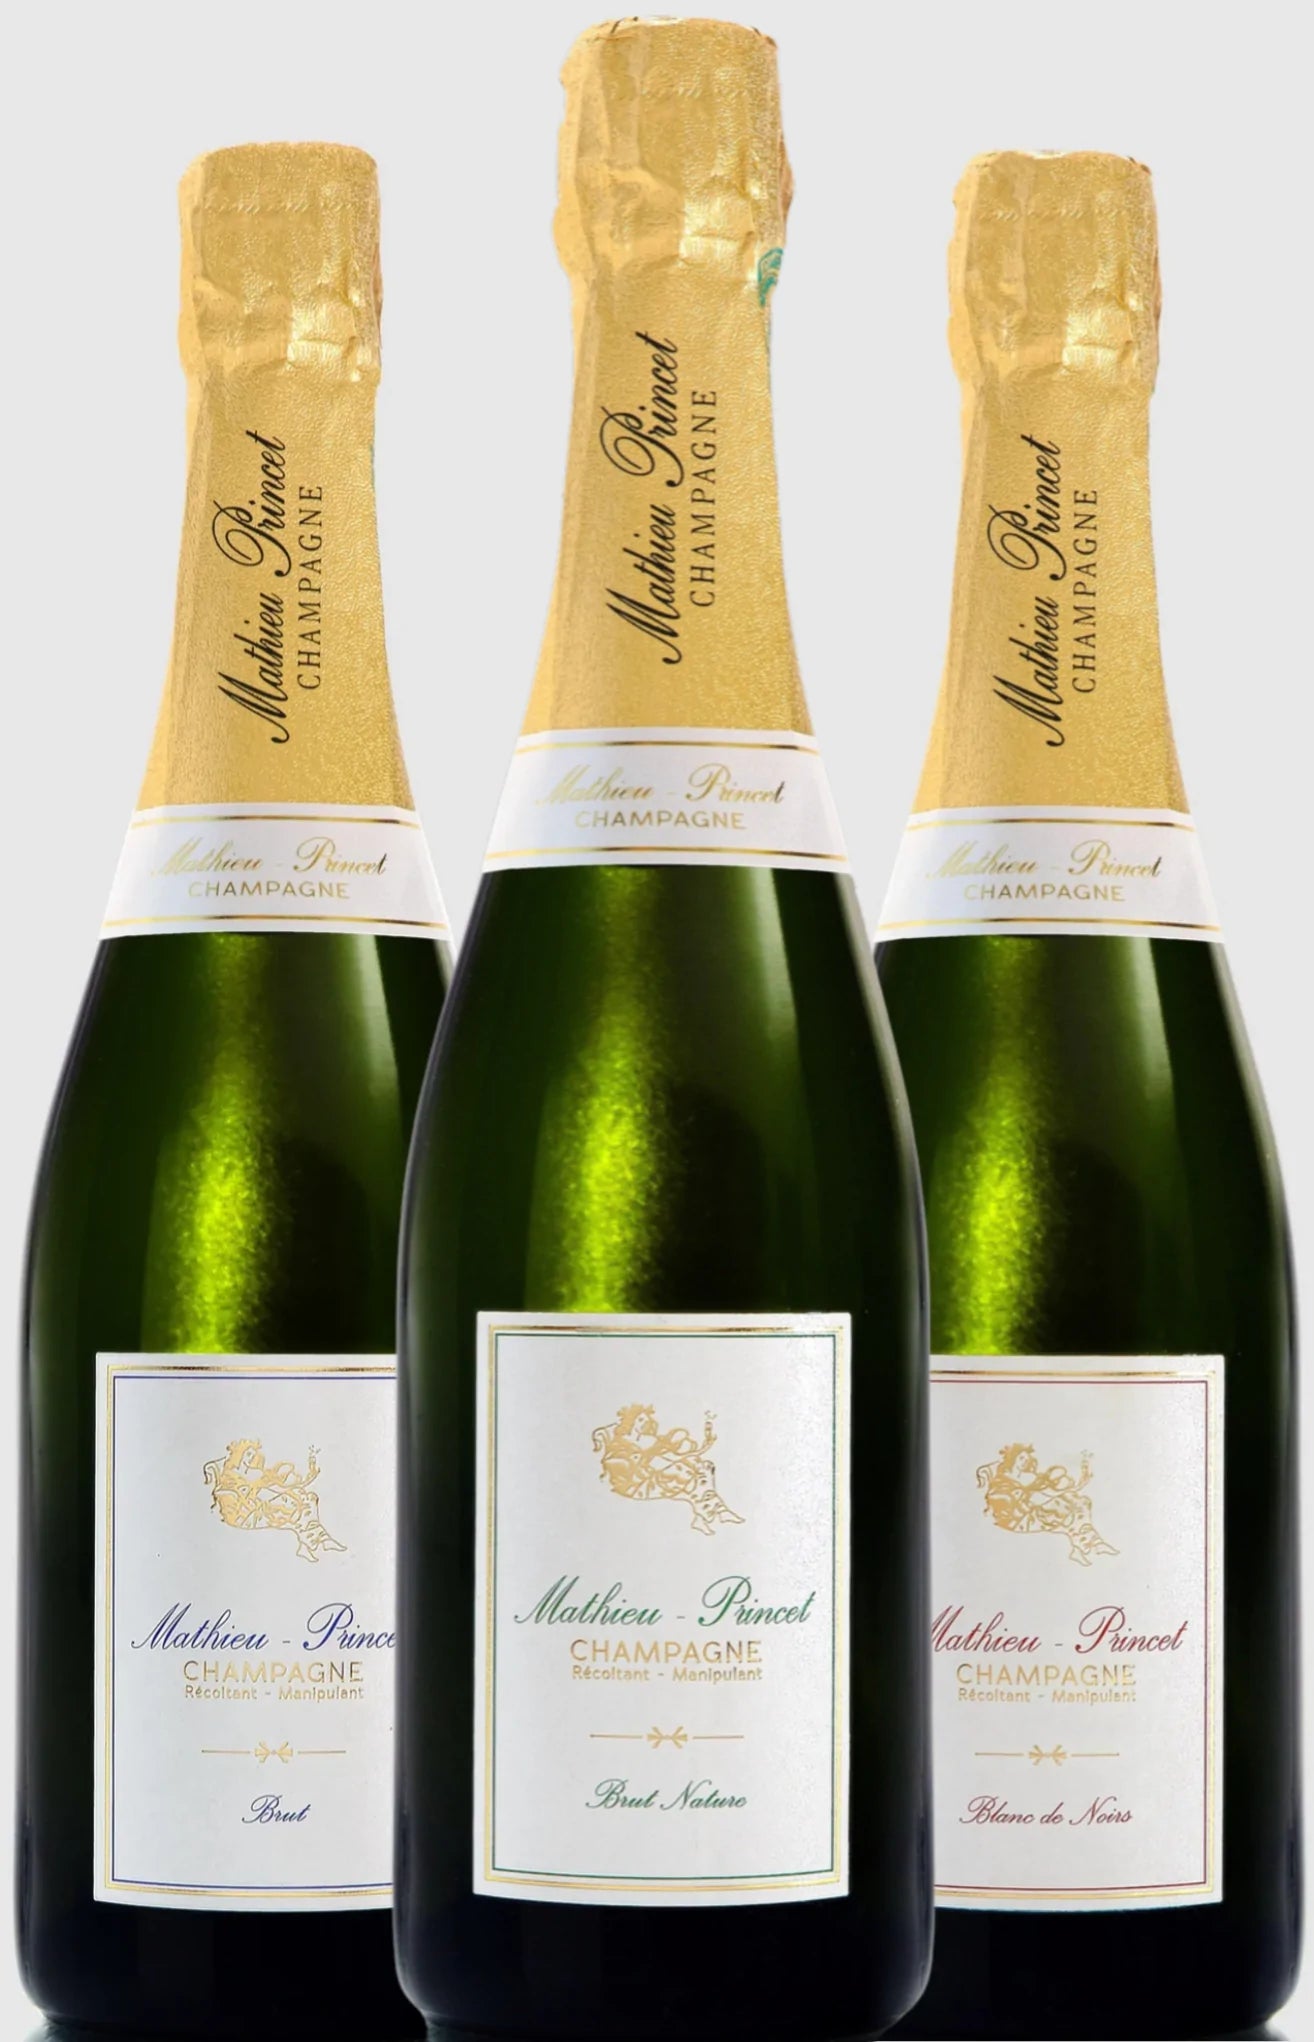 Coffret champagne 3 bouteilles Brut Sélection, Brut Nature et Prestige